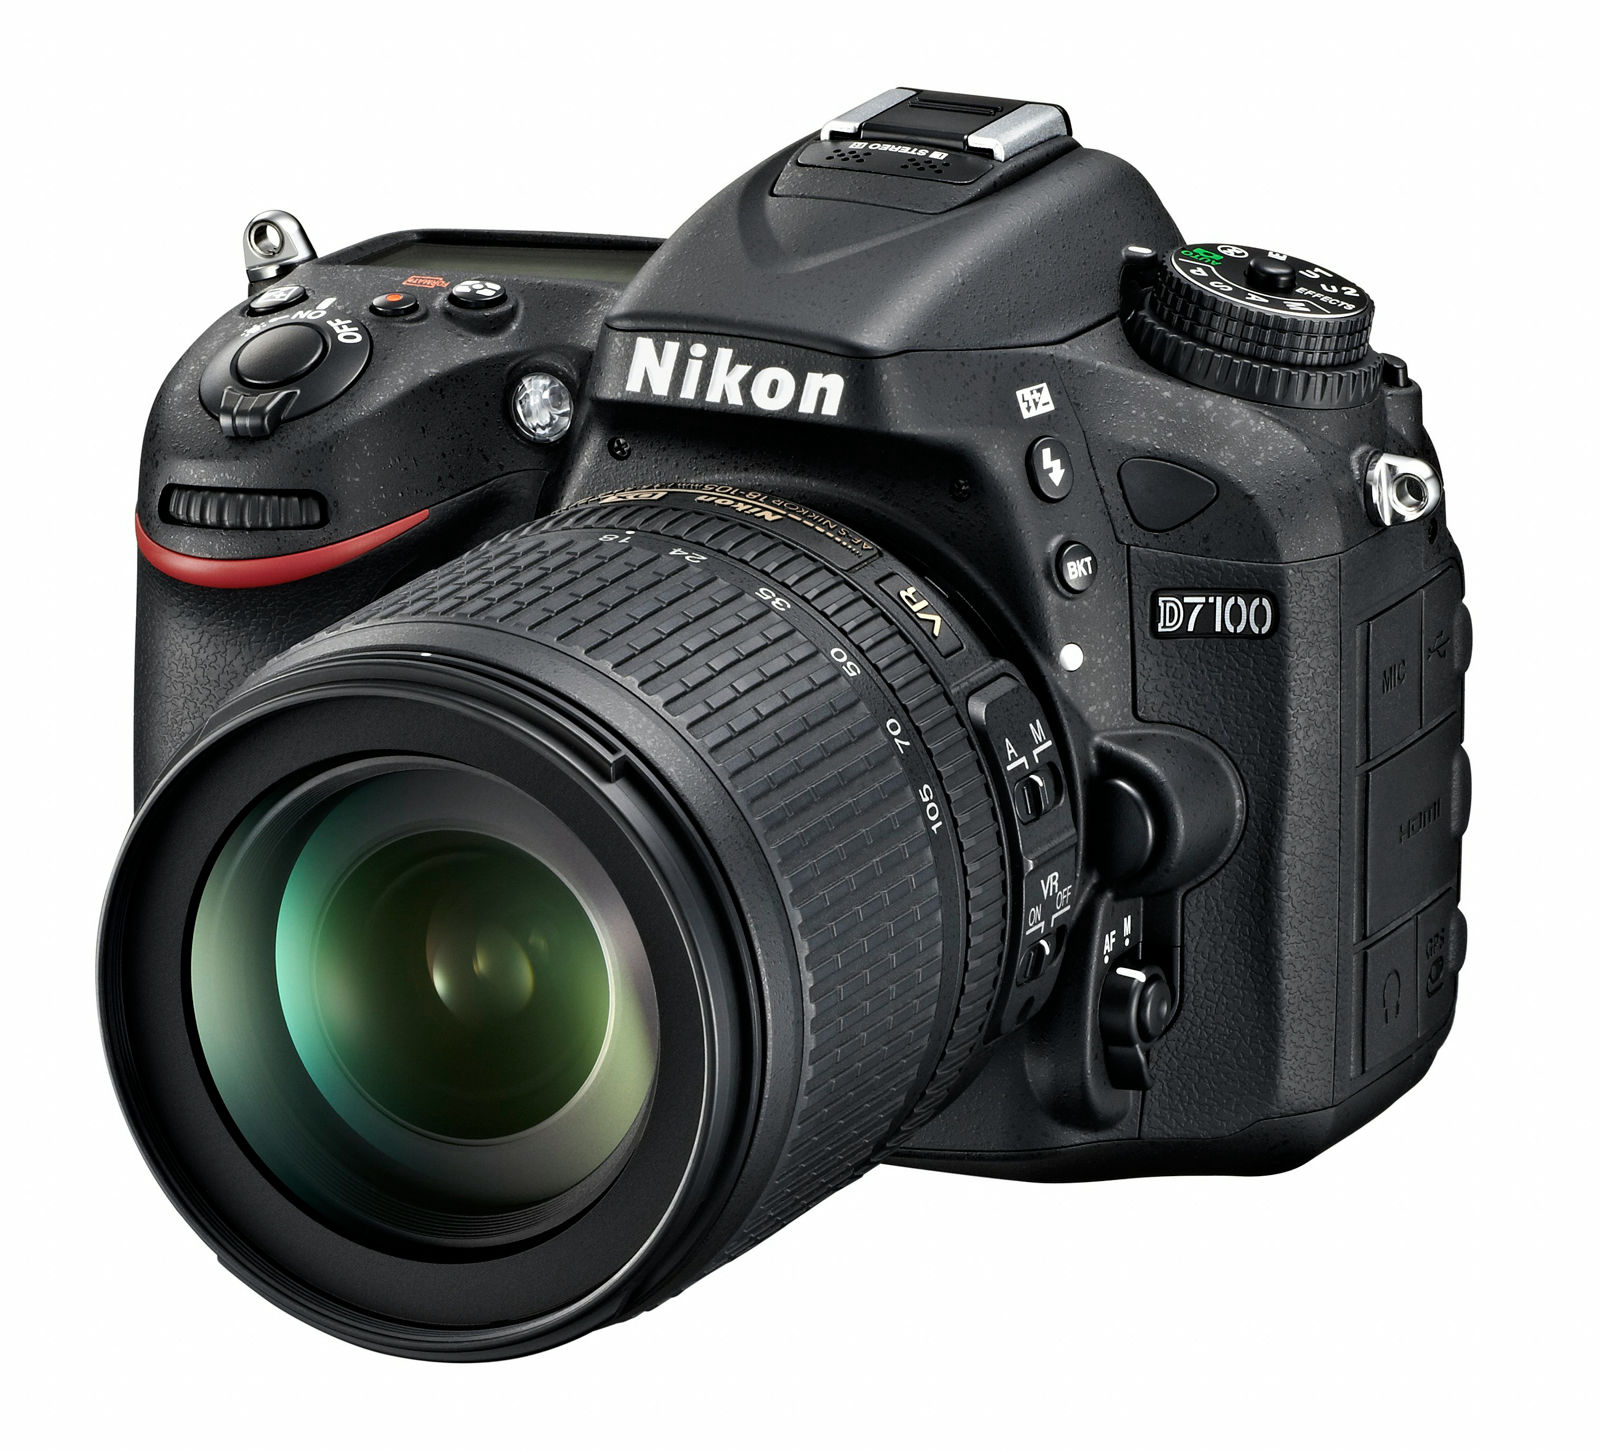 ニコンがデジタル一眼レフカメラ「D7100」を3月発売予定、13万円